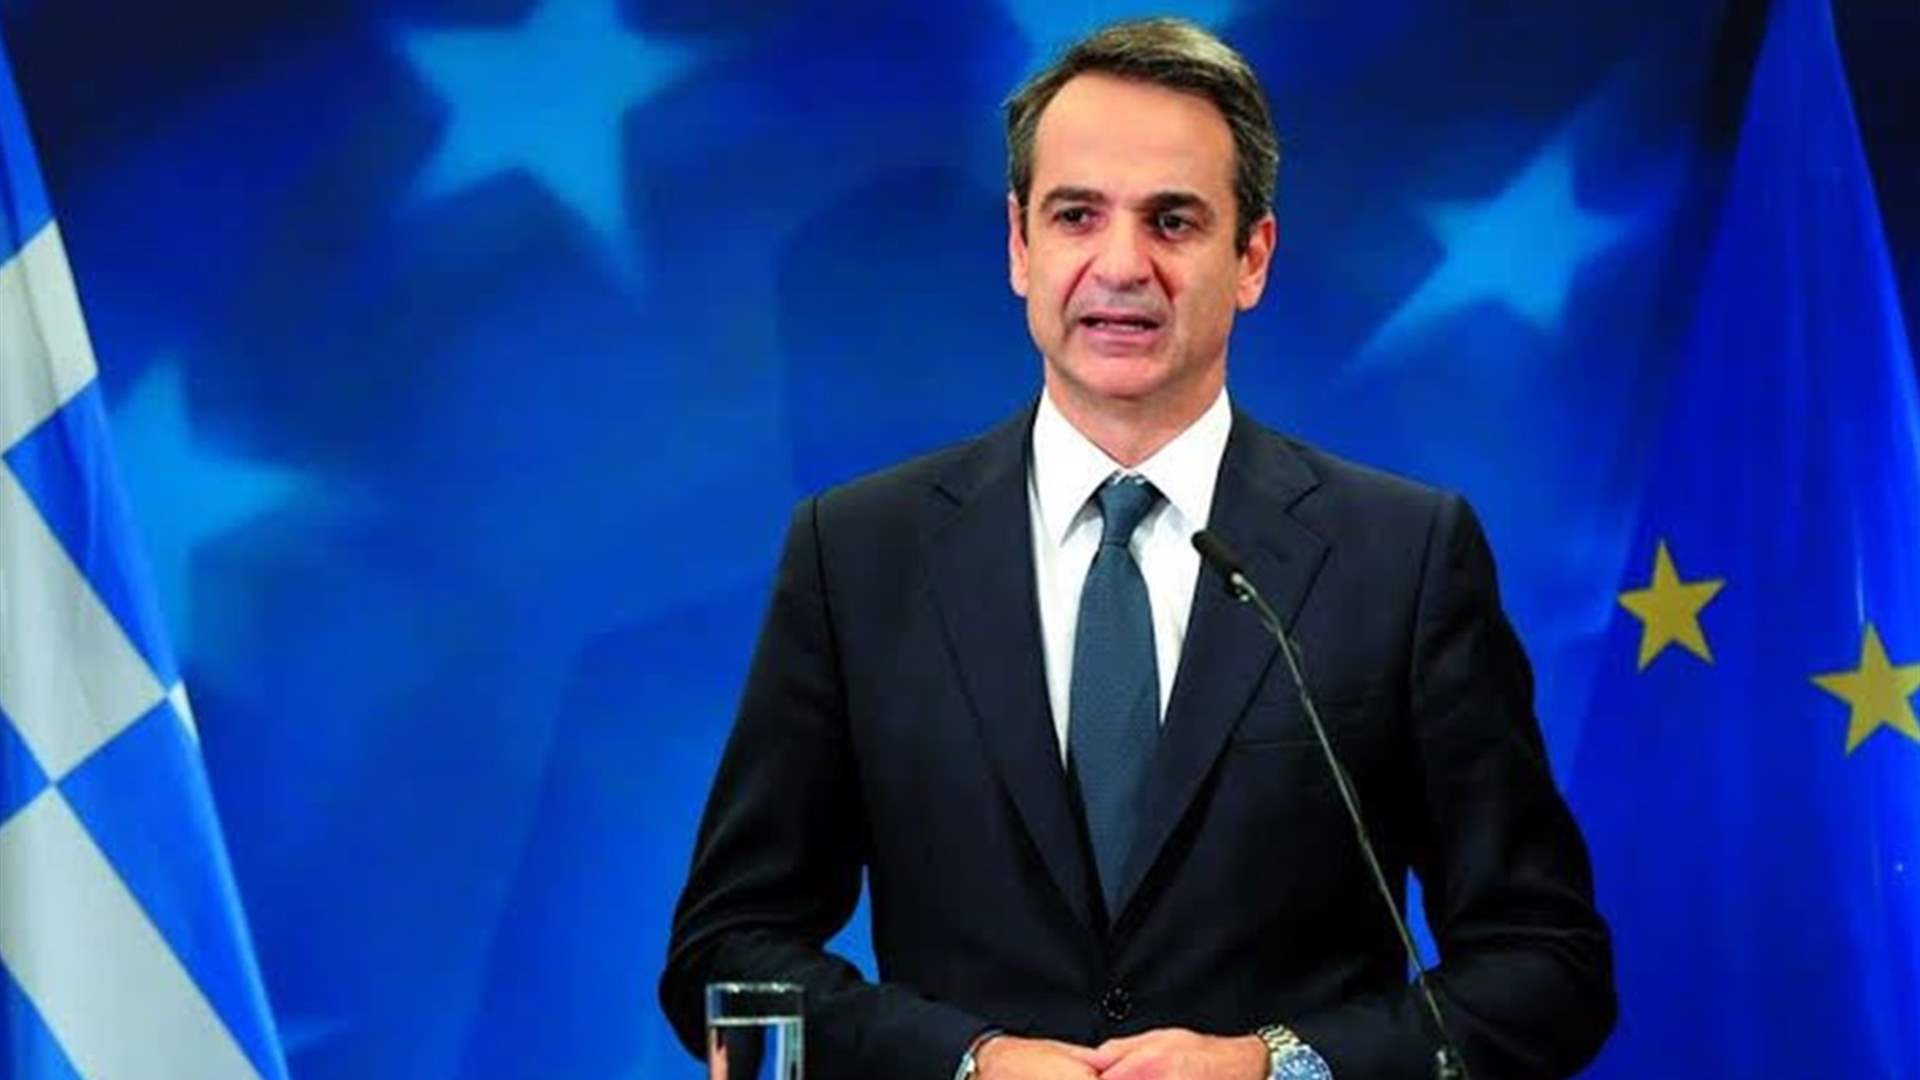 رئيس الوزراء اليوناني إلى أنقرة في زيارة &quot;حسن جوار&quot;